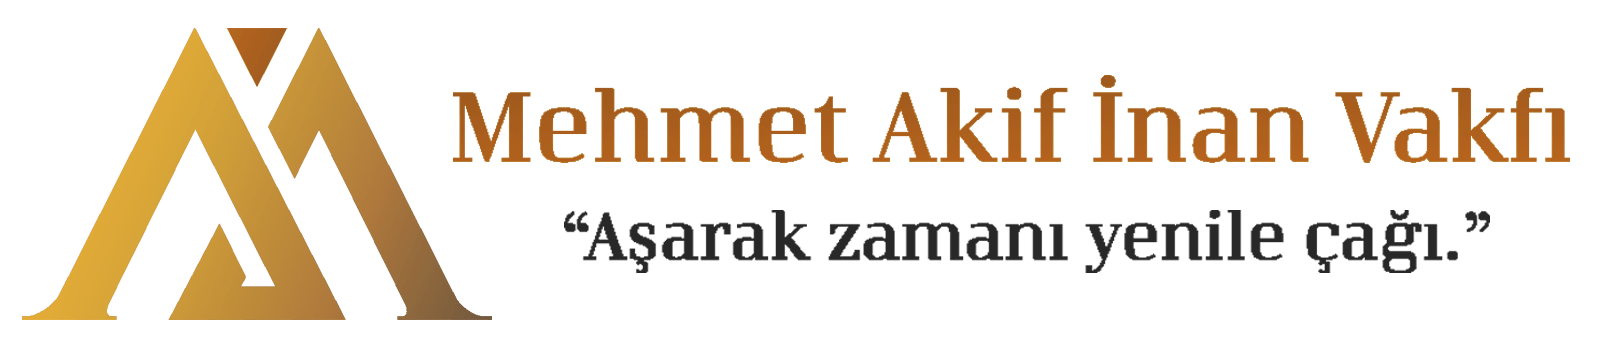 Mehmet Akif İnan Vakfı Logo